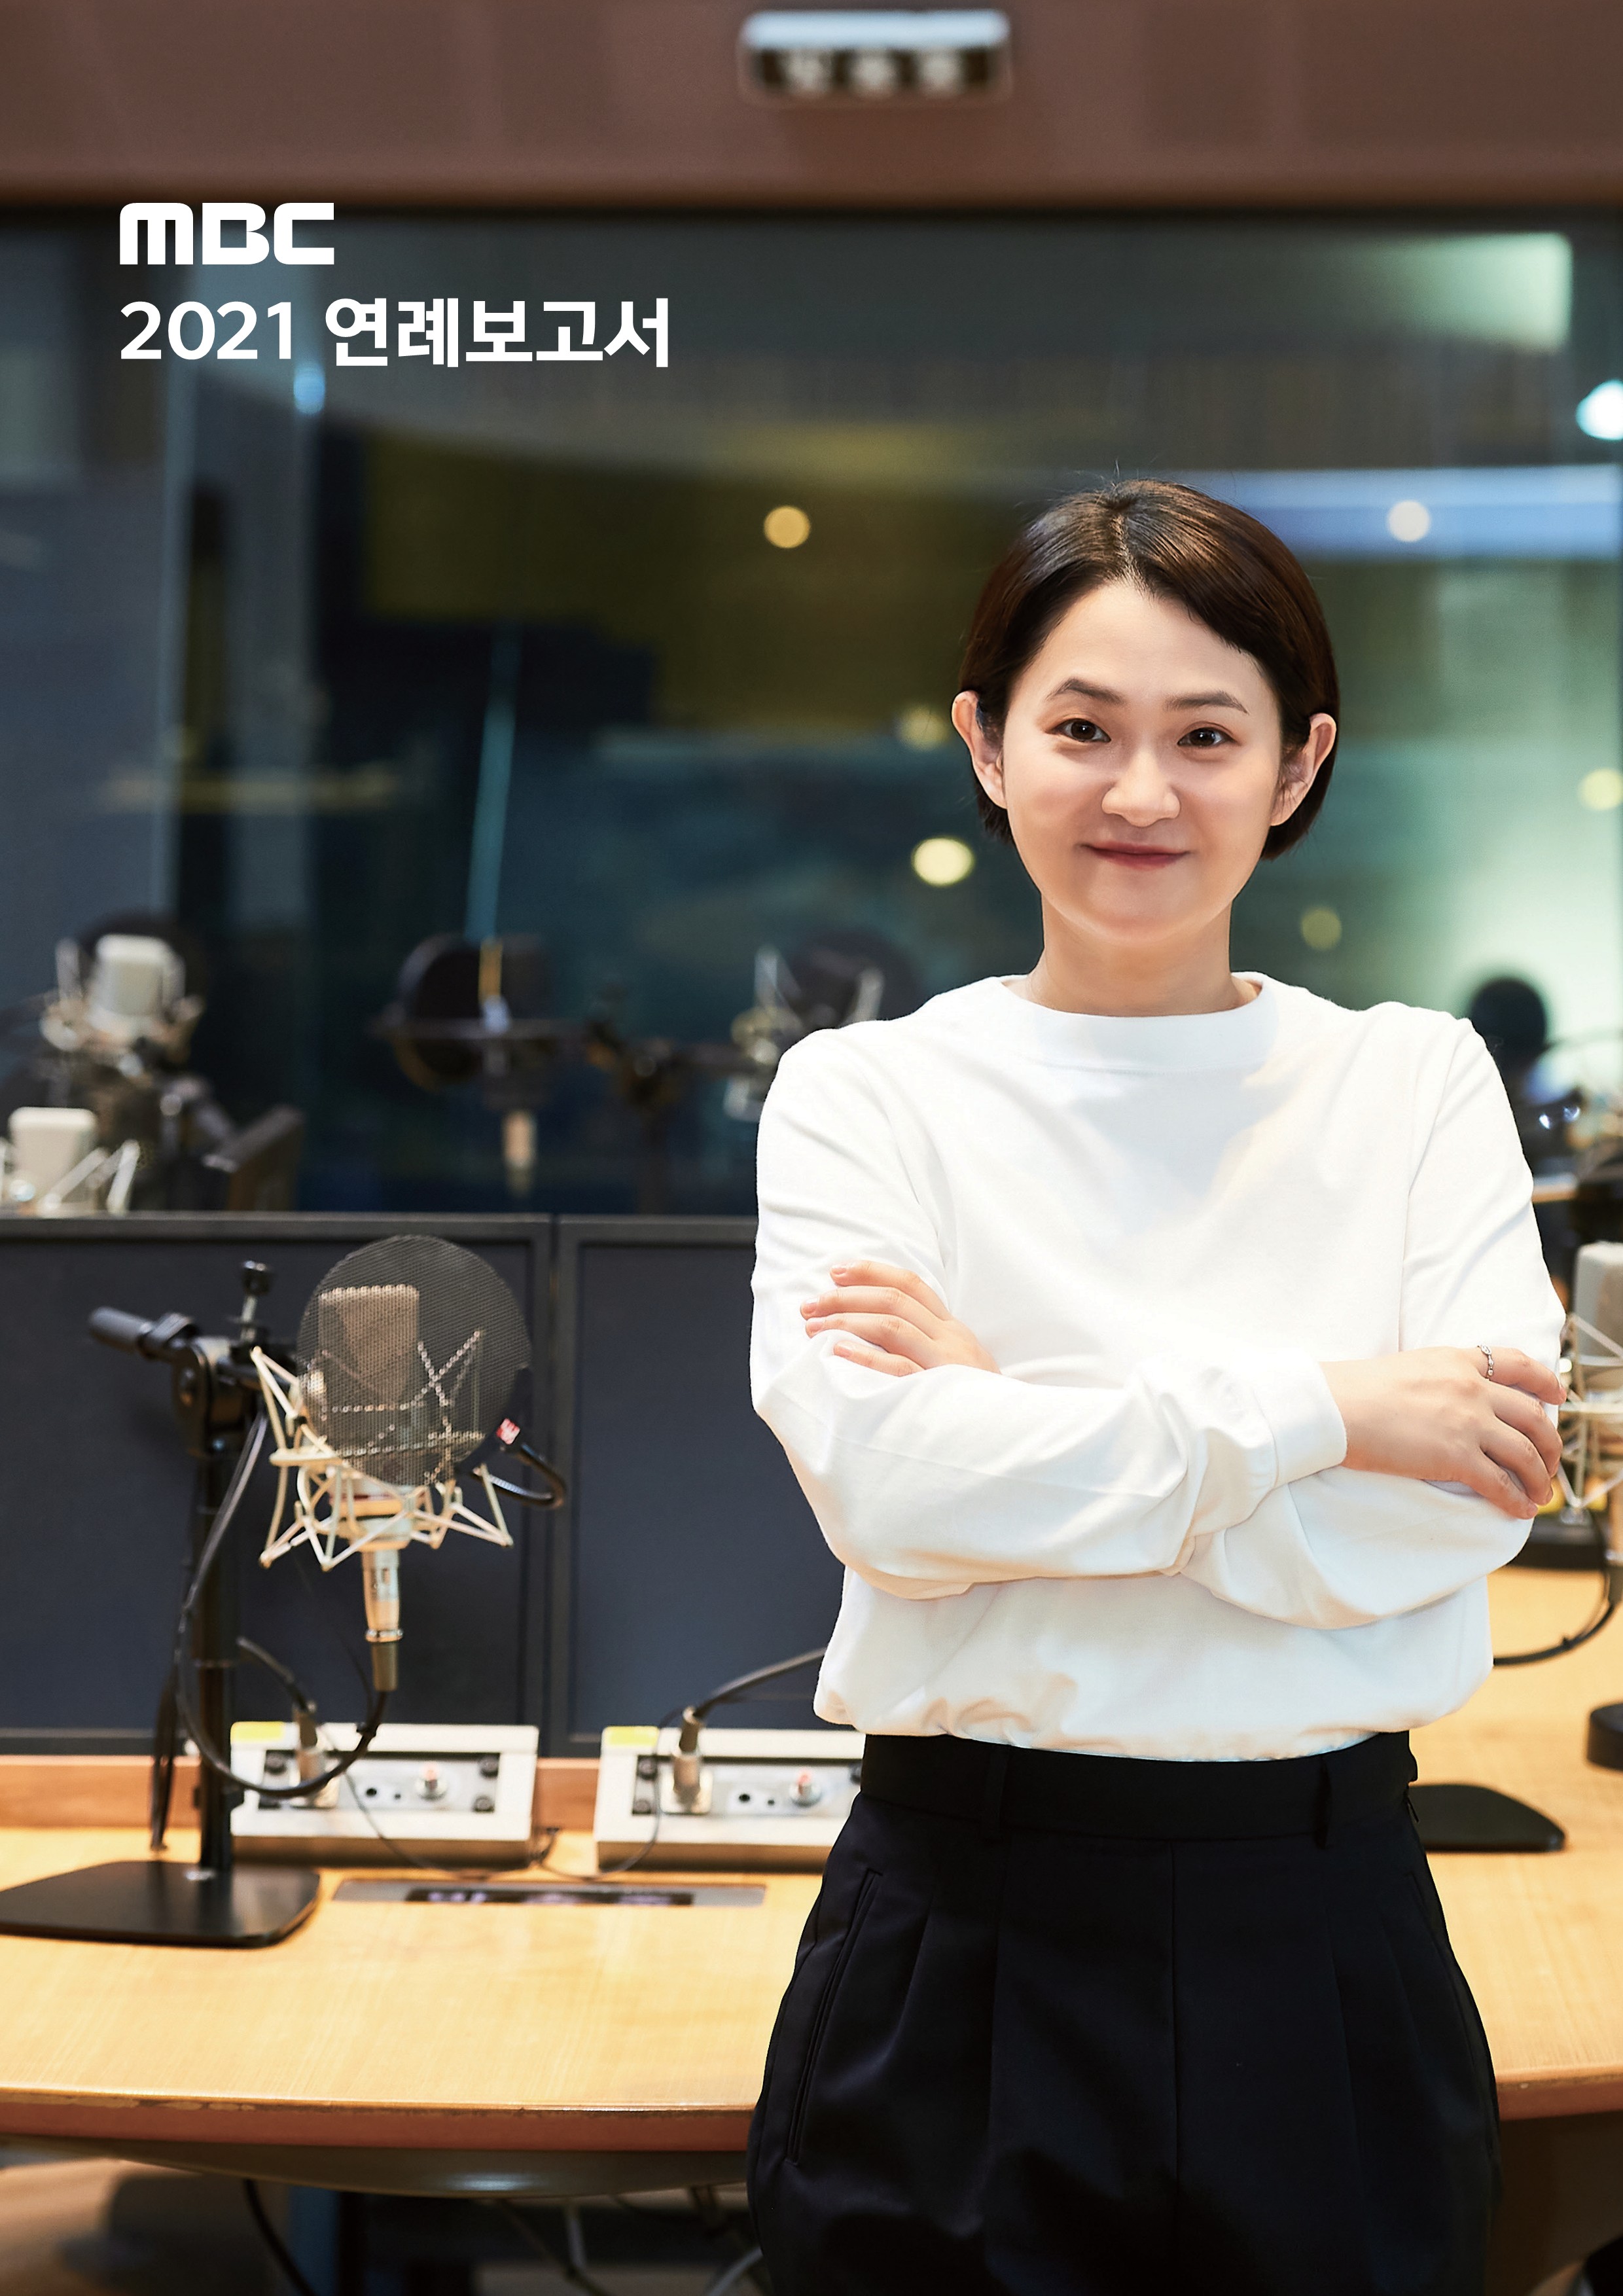 MBC 2021 연례보고서 김신영 사진